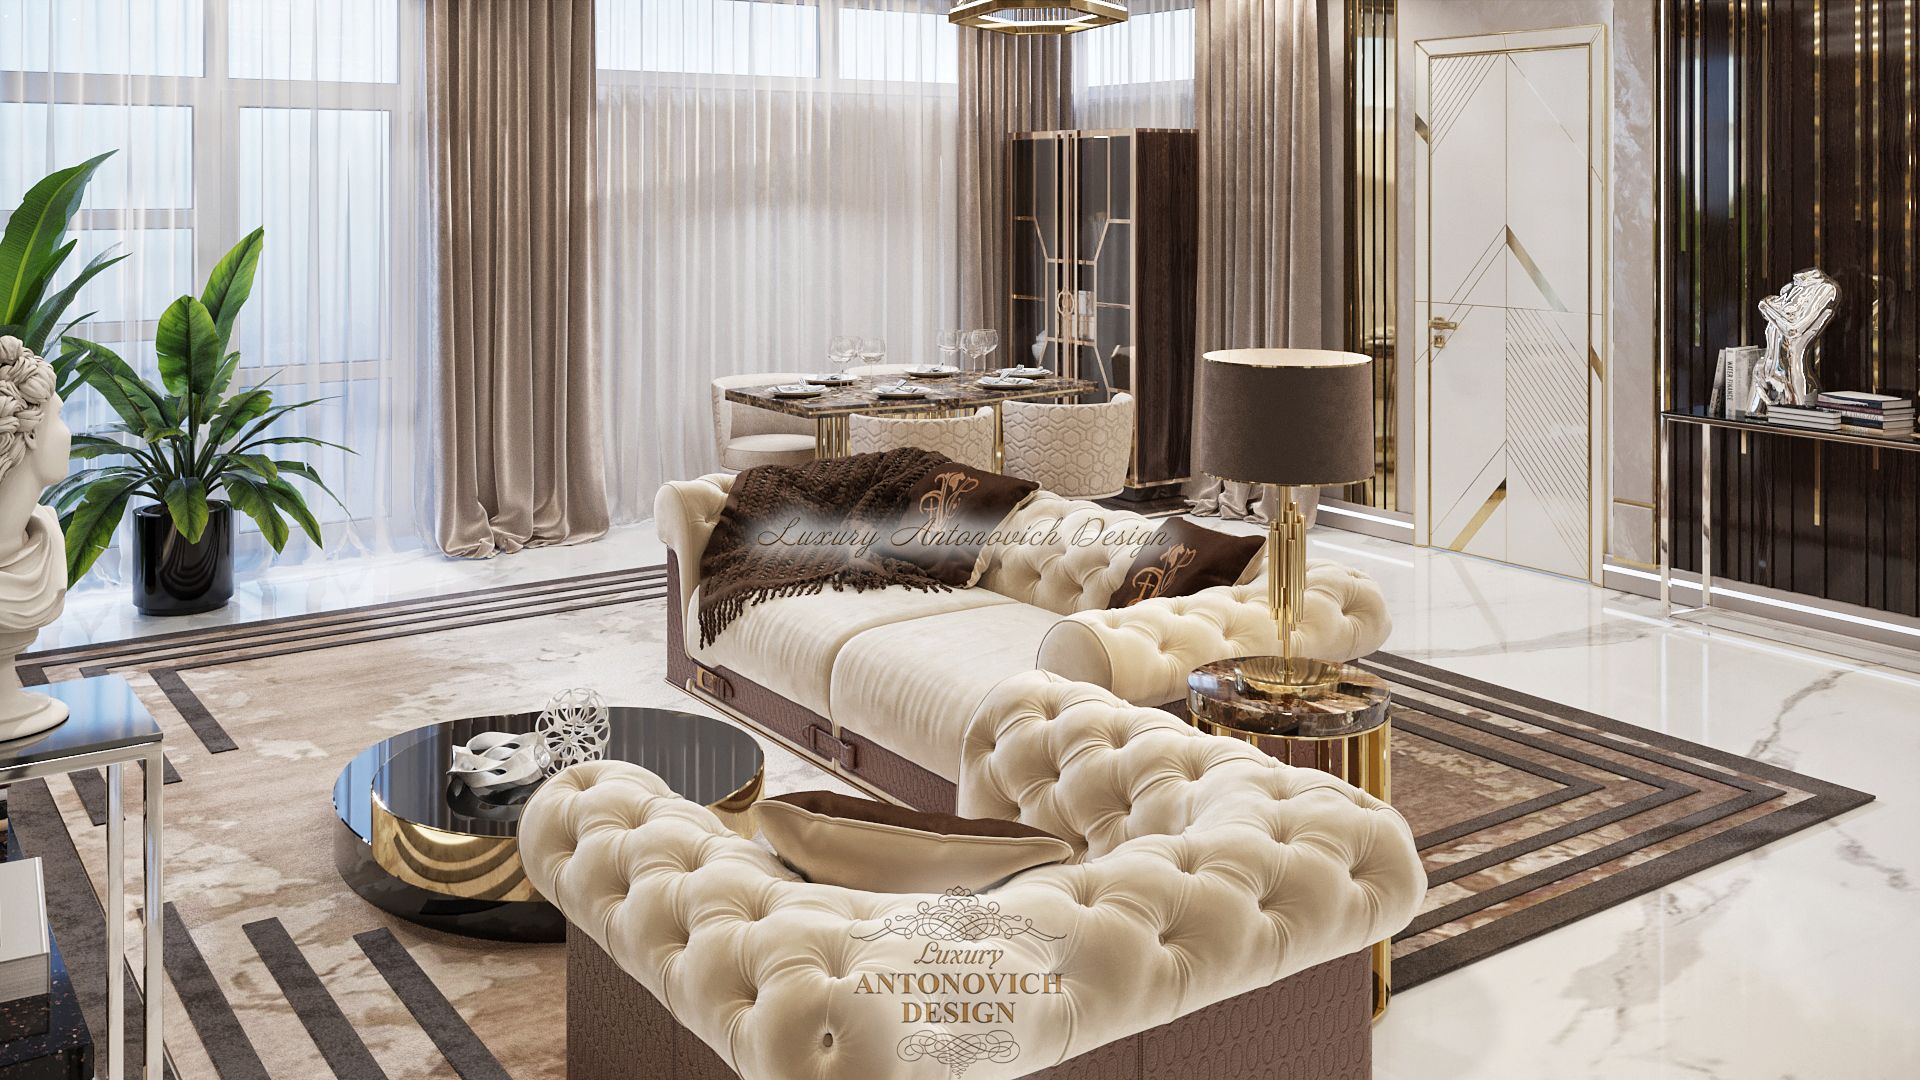 Элегантный интерьер гостиной в стиле контемпорари от студии Antonovych Design